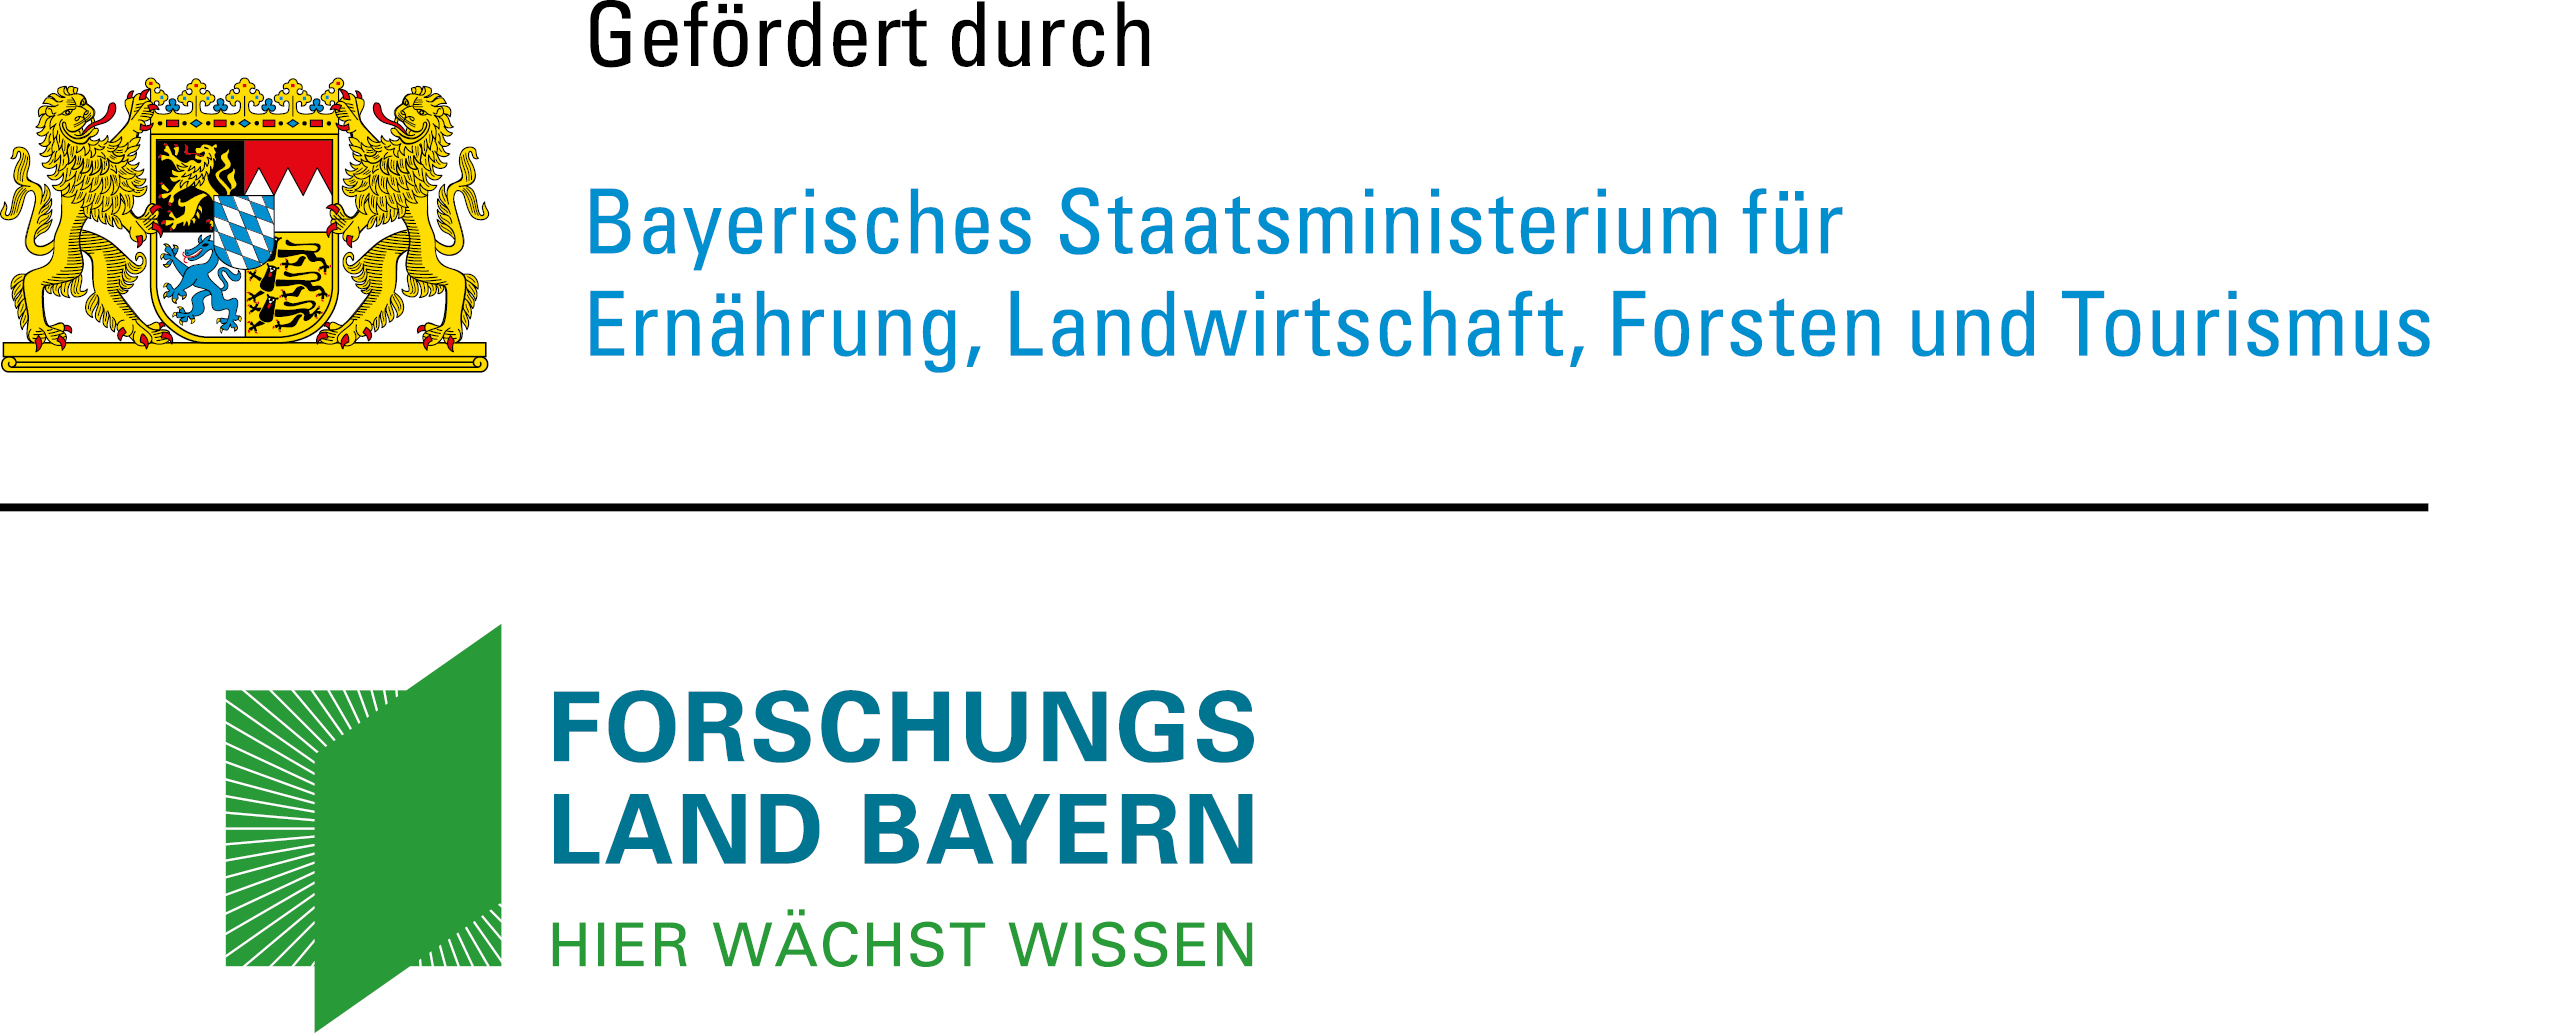 Bayerisches Staatsministerium für Ernährung, Landwirtschaft, Forsten und  Tourismus